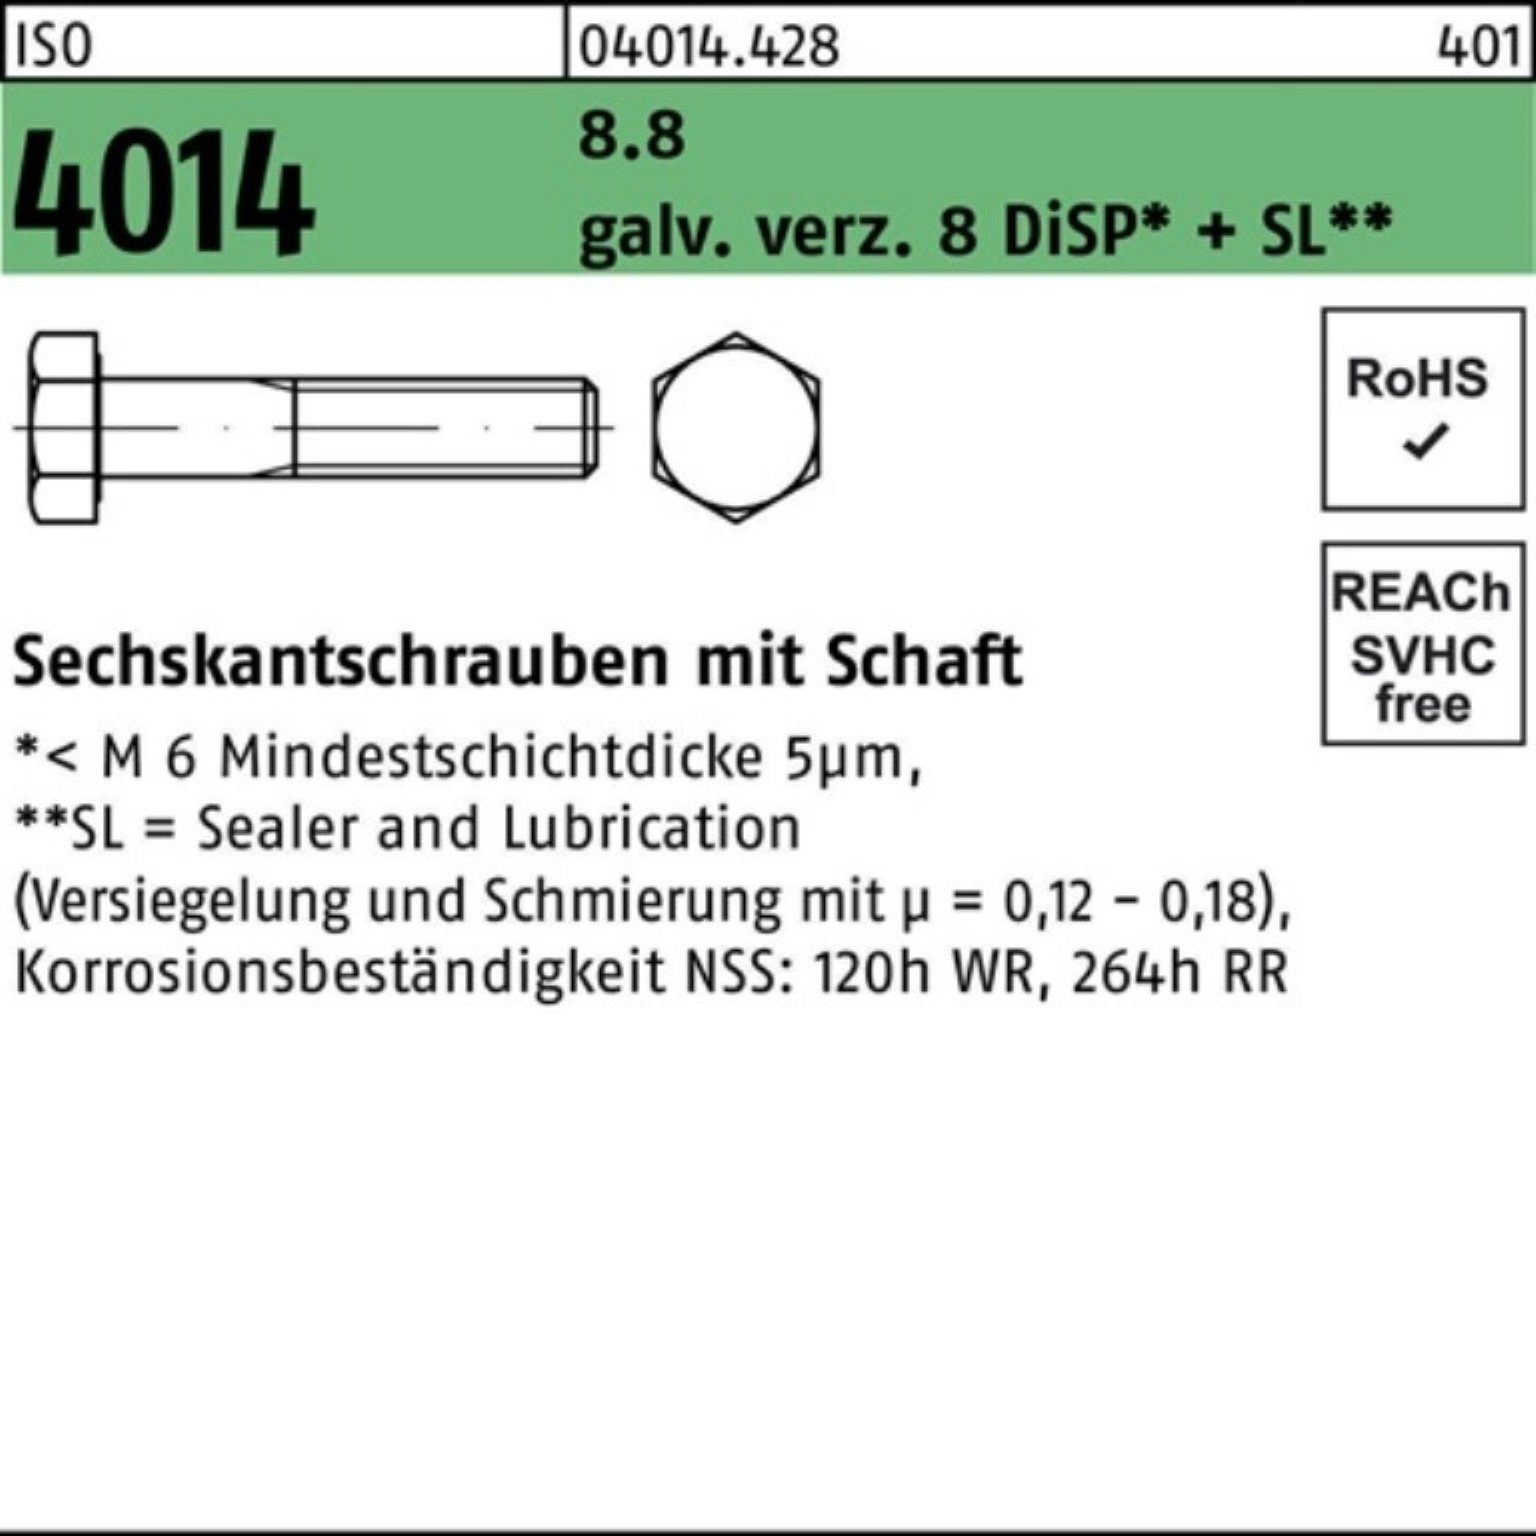 Bufab Sechskantschraube 100er Pack Sechskantschraube ISO 4014 Schaft M12x180 8.8 galv.verz. 8